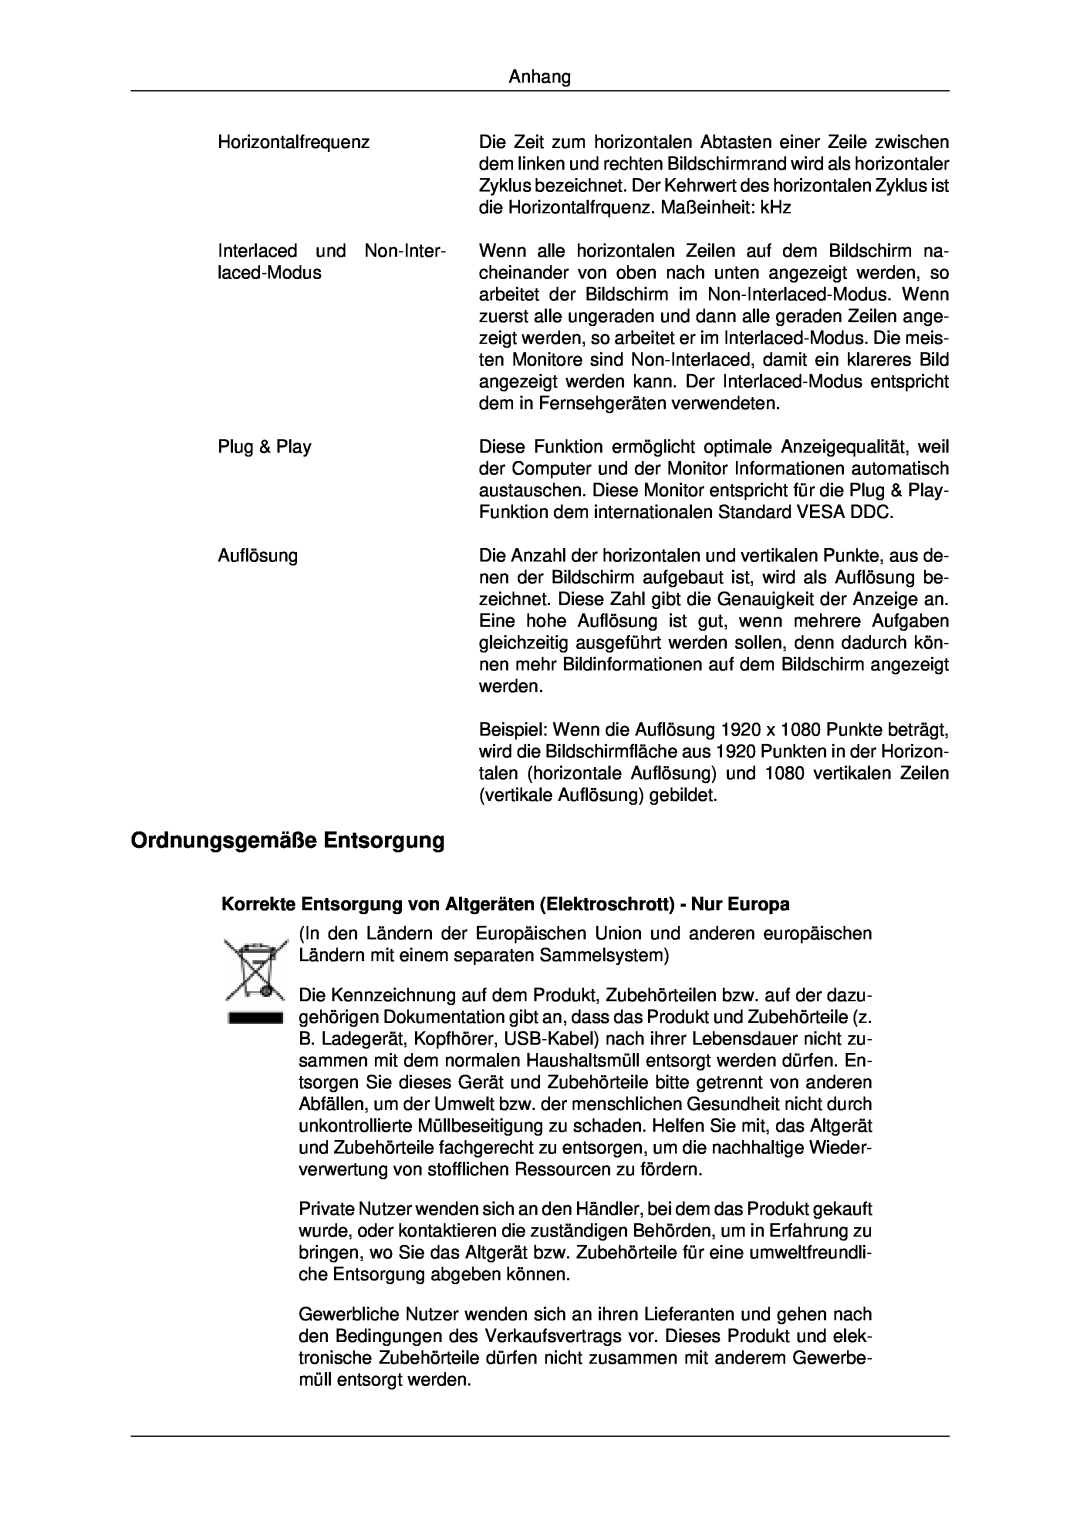 Samsung LH46MRTLBC/EN manual Ordnungsgemäße Entsorgung, Korrekte Entsorgung von Altgeräten Elektroschrott - Nur Europa 